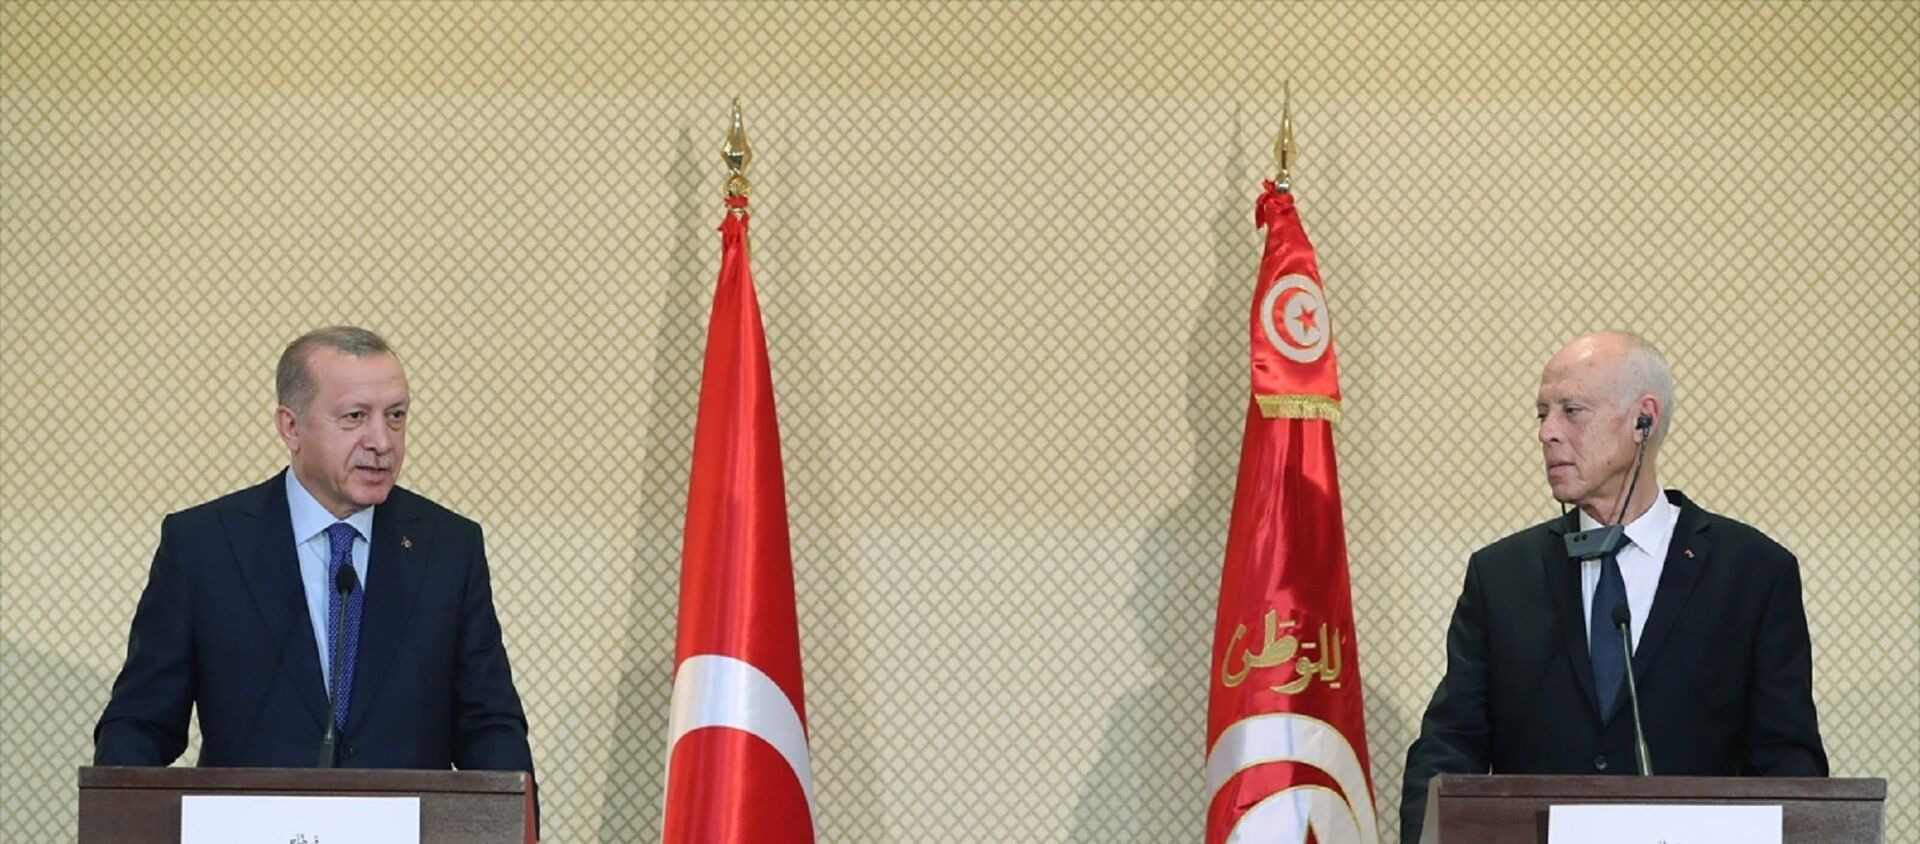 Türkiye Cumhurbaşkanı Recep Tayyip Erdoğan, Tunus Cumhurbaşkanı Kays Said ile görüşmeler sonrası ortak basın toplantısı düzenledi. - Sputnik Türkiye, 1920, 02.08.2021